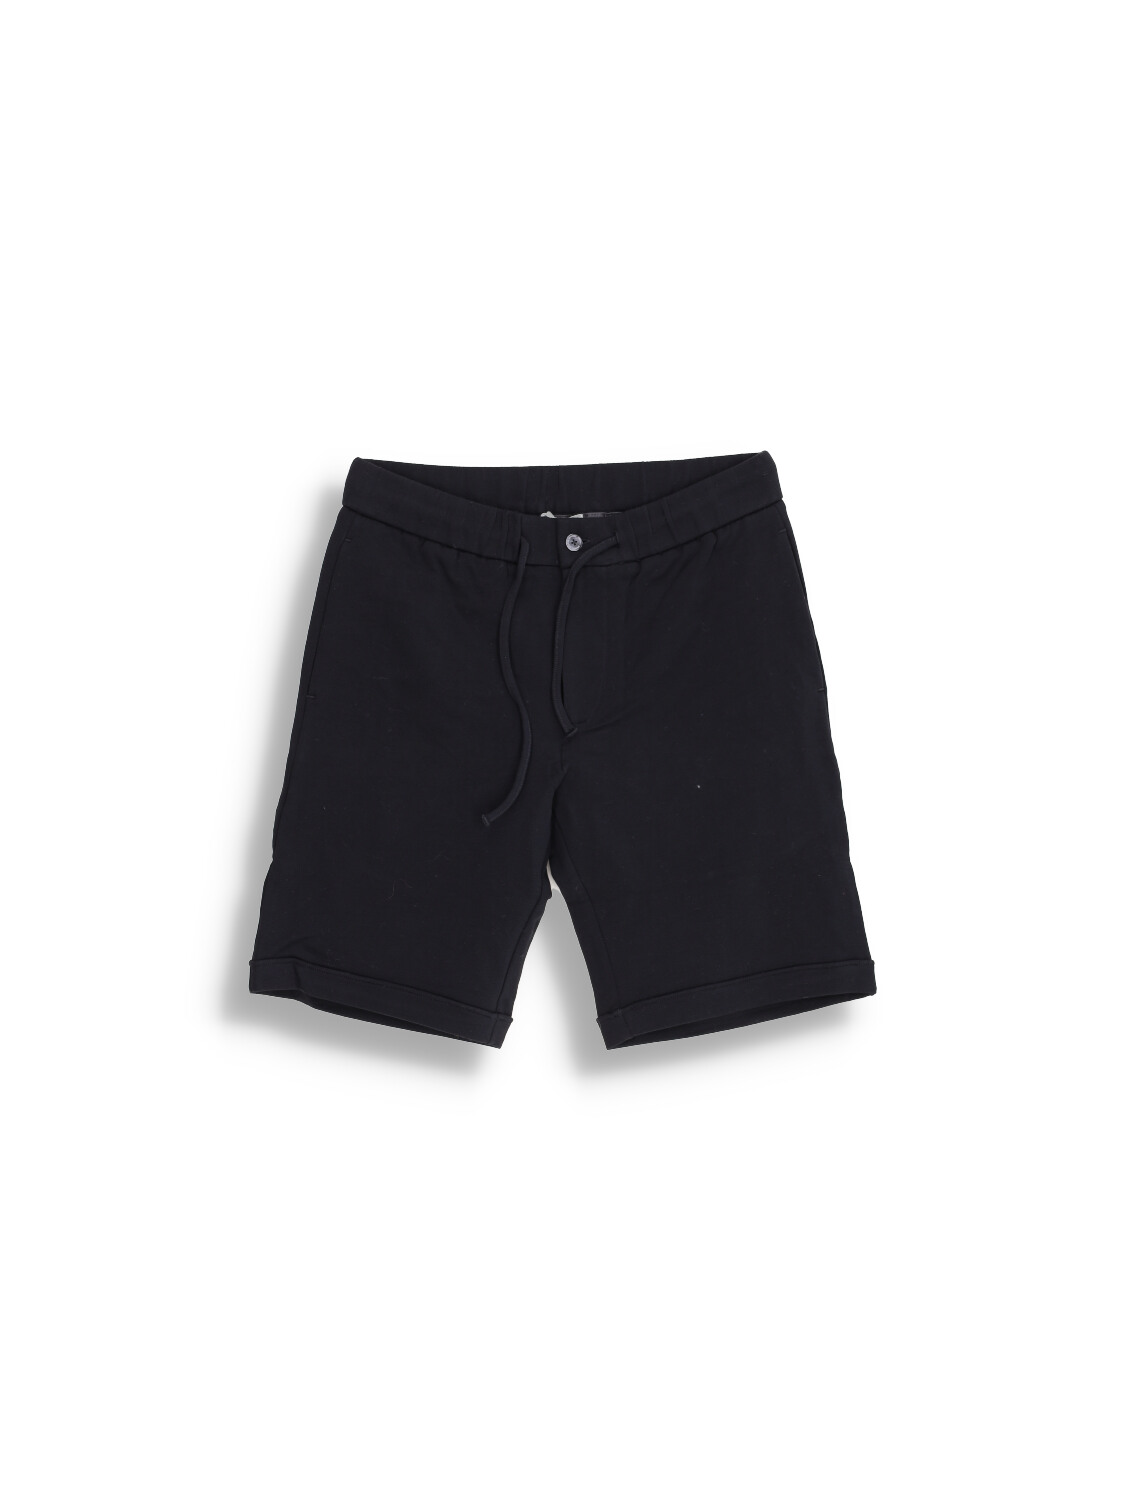 Stefan Brandt Jon Bermuda - Pantalón corto con cintura elástica de algodón negro M